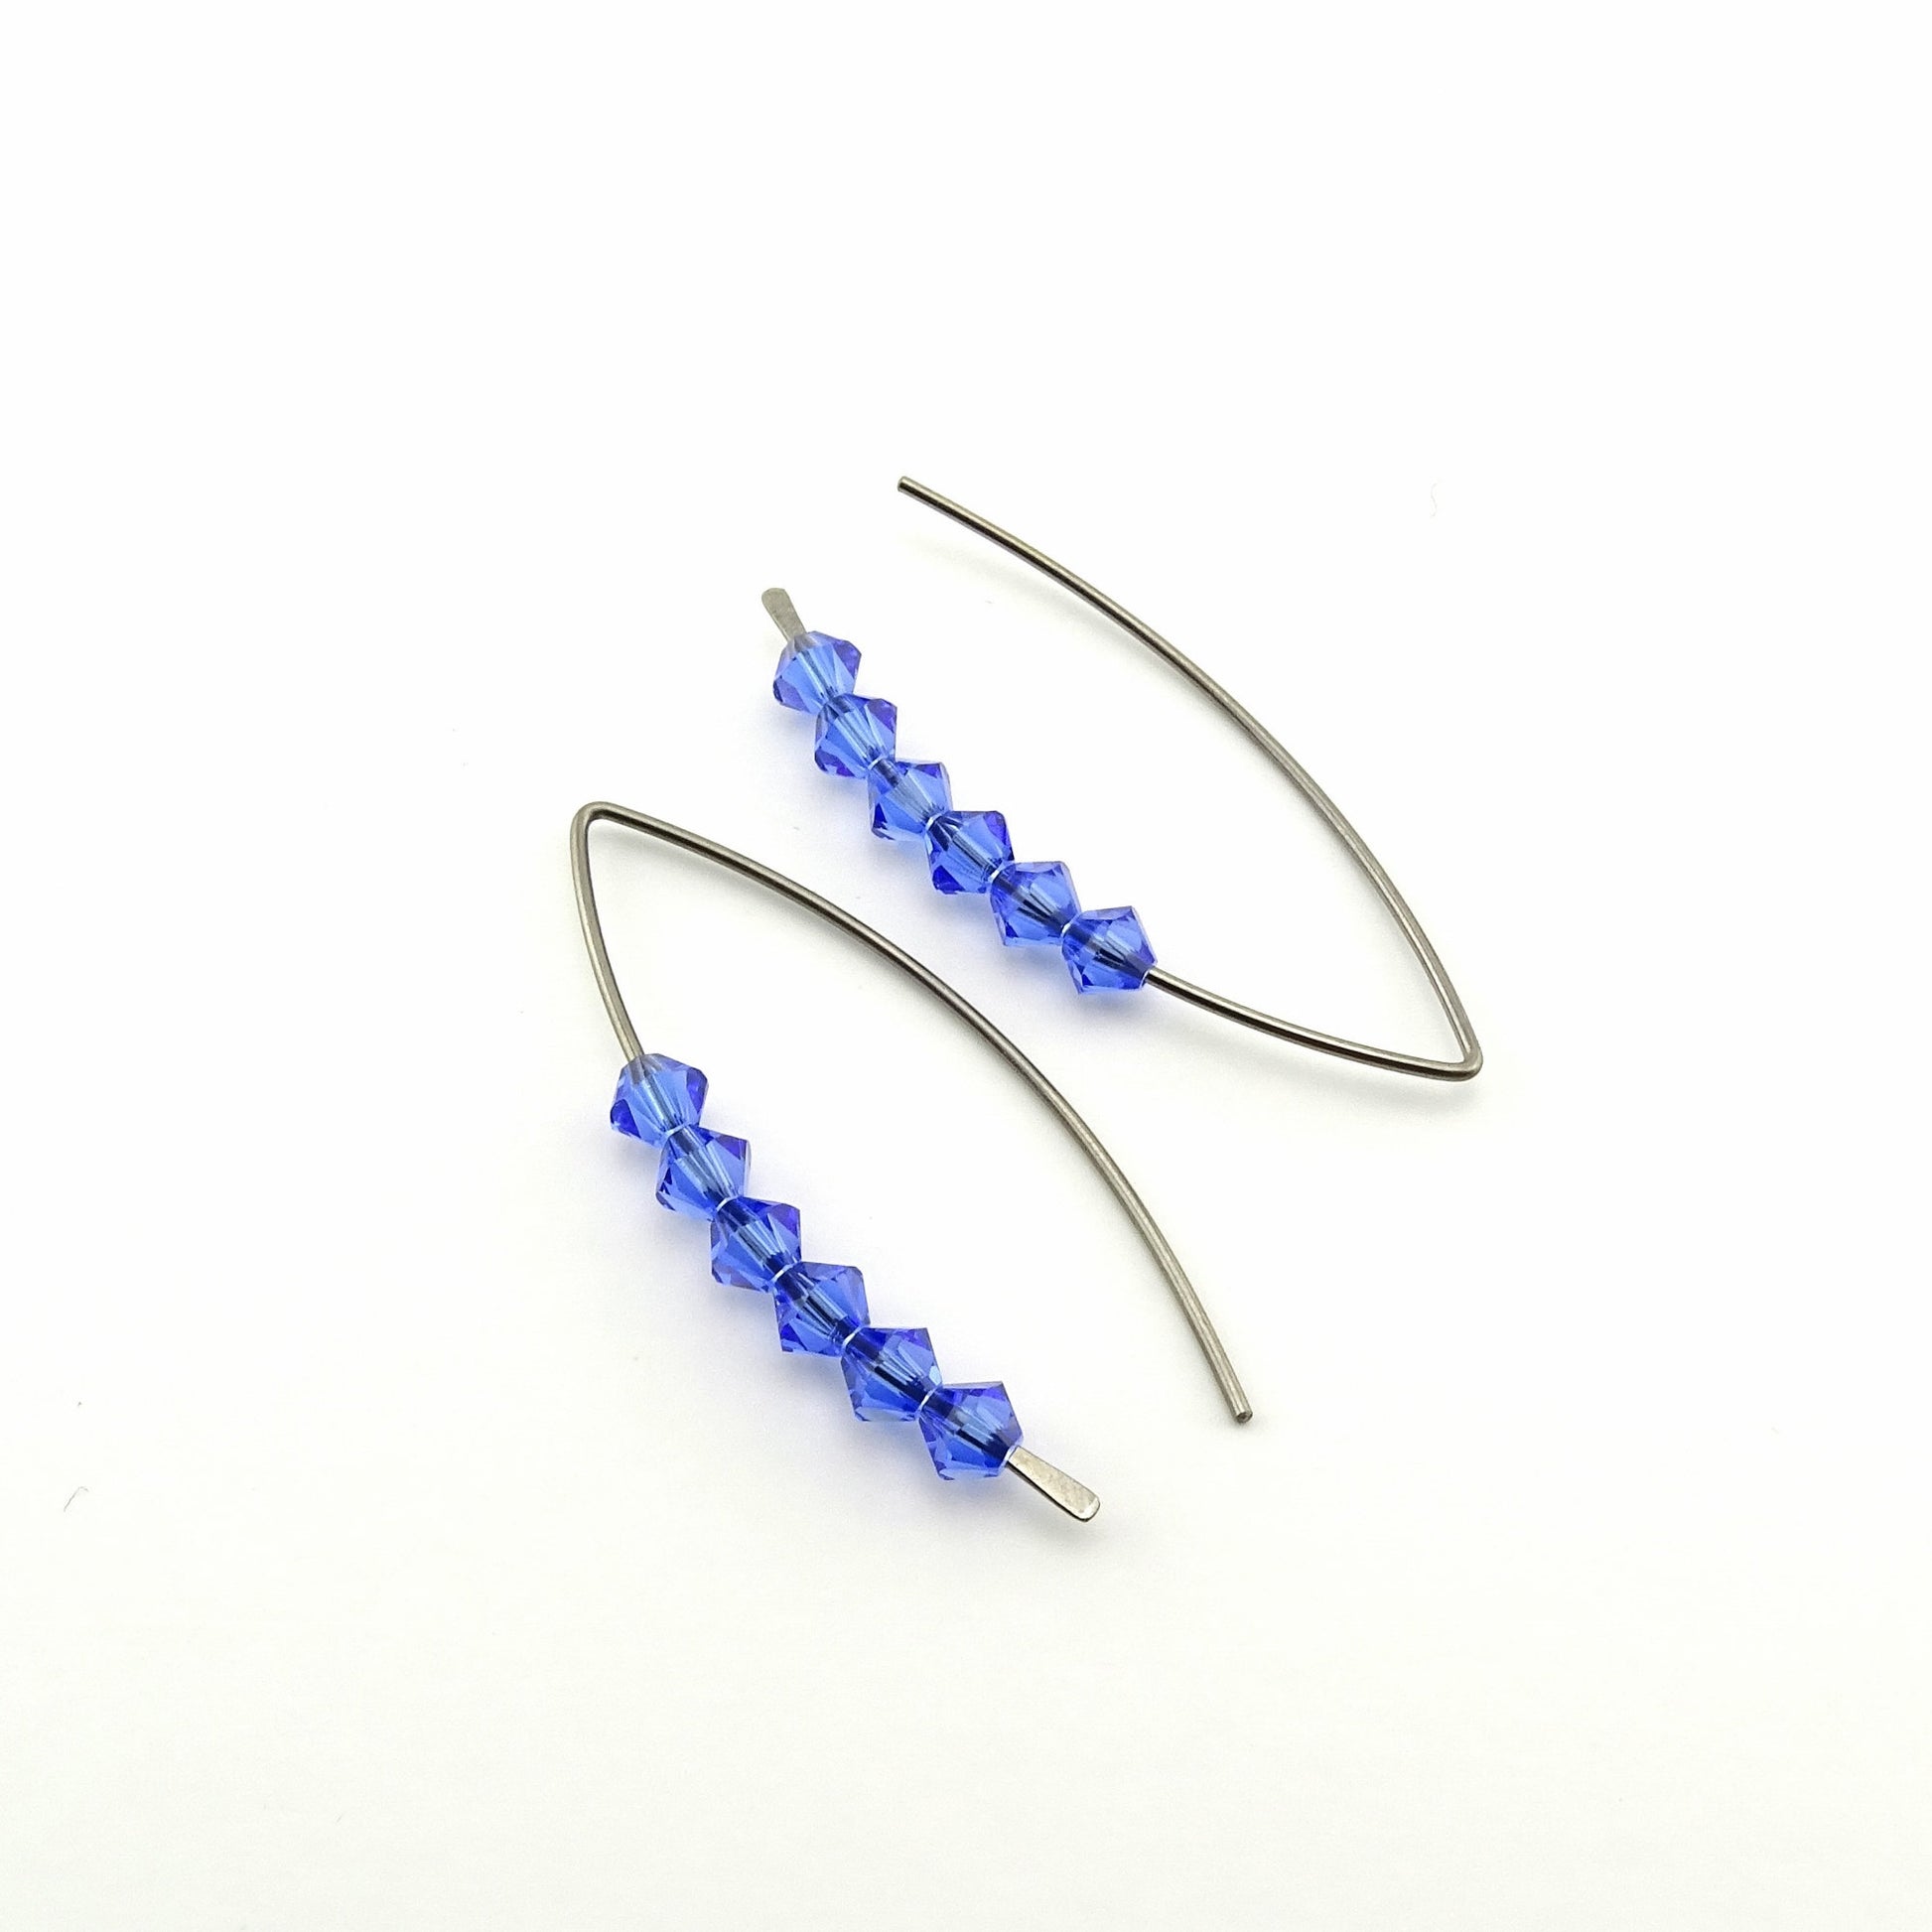 Sapphire Blue Slider Wishbone Threaders Niobium Earrings, Swarovski Crystal, Nickel Free Hypoallergenic Threader Earrings for Sensitive Ears